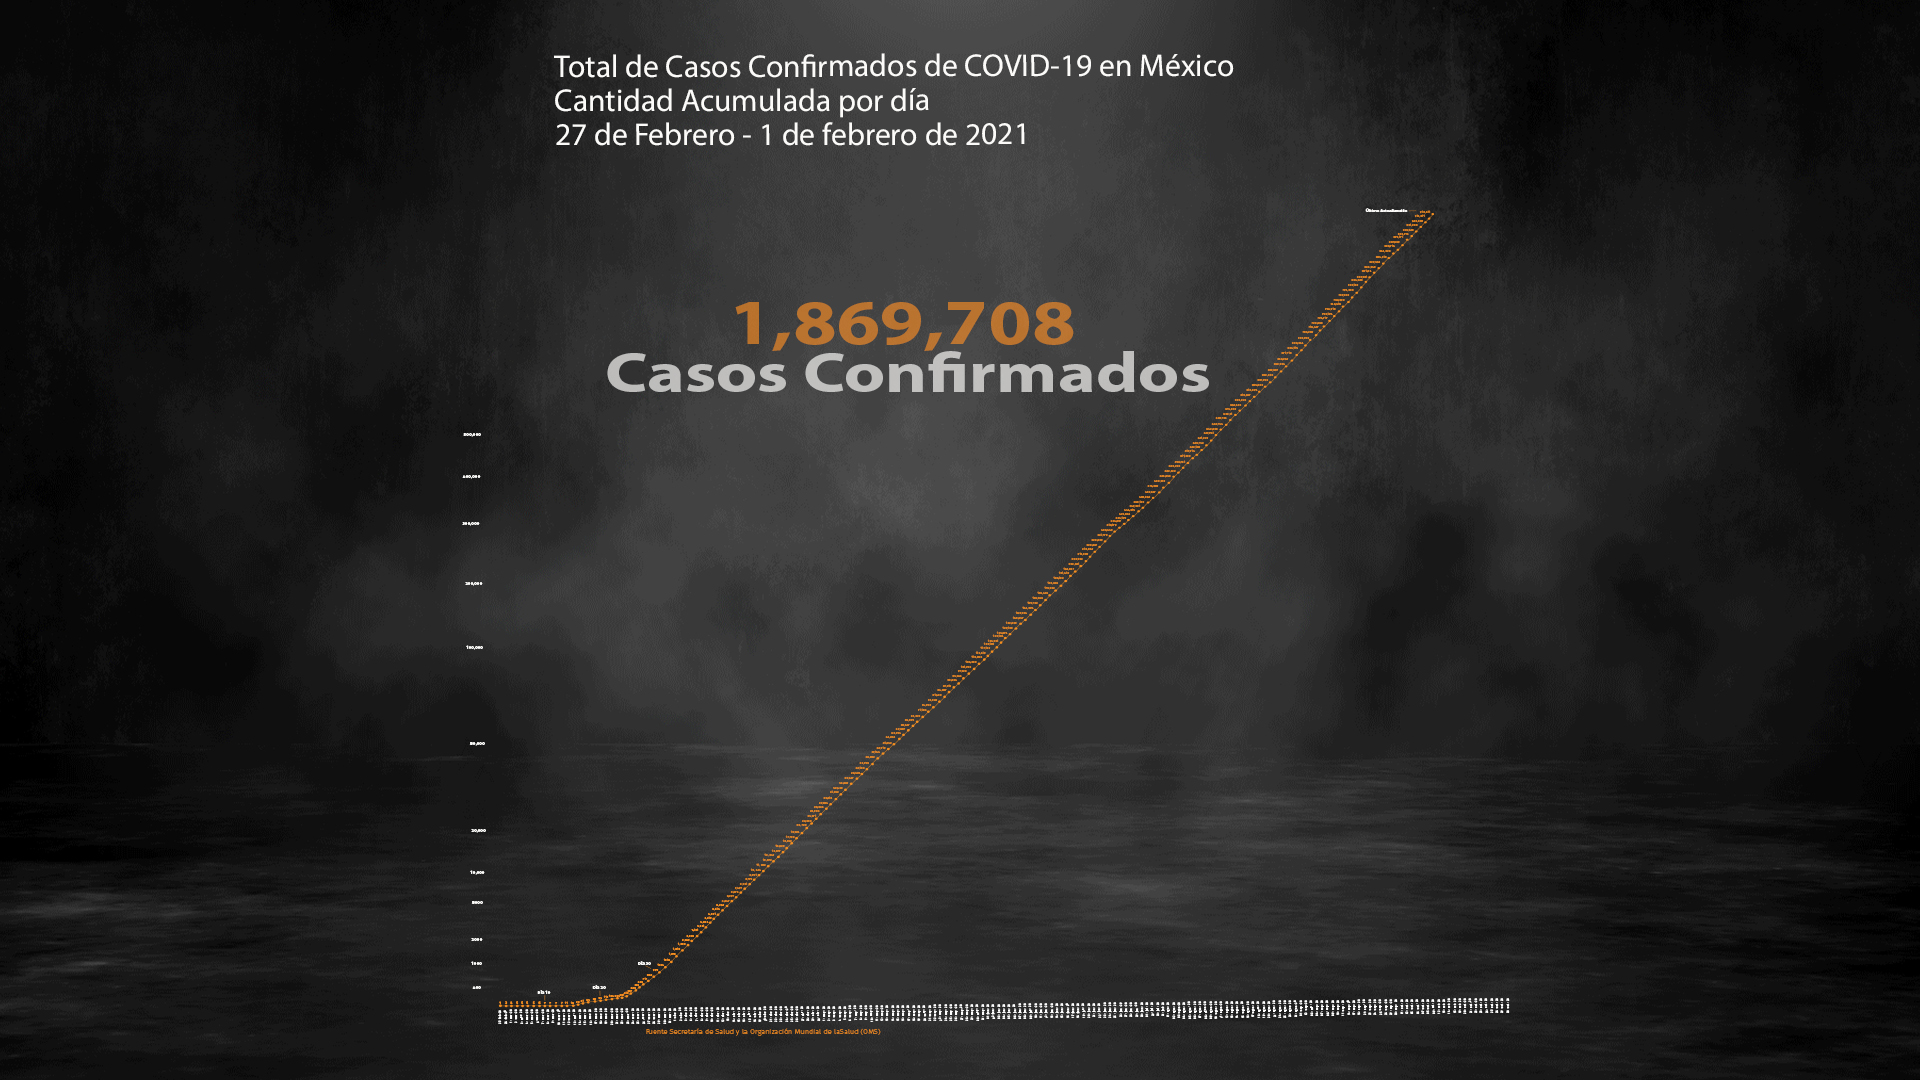 Hasta este lunes 1 de febrero se reportaron 159,100 muertes acumuladas por COVID-19 (Ilustración: Steve Allen)